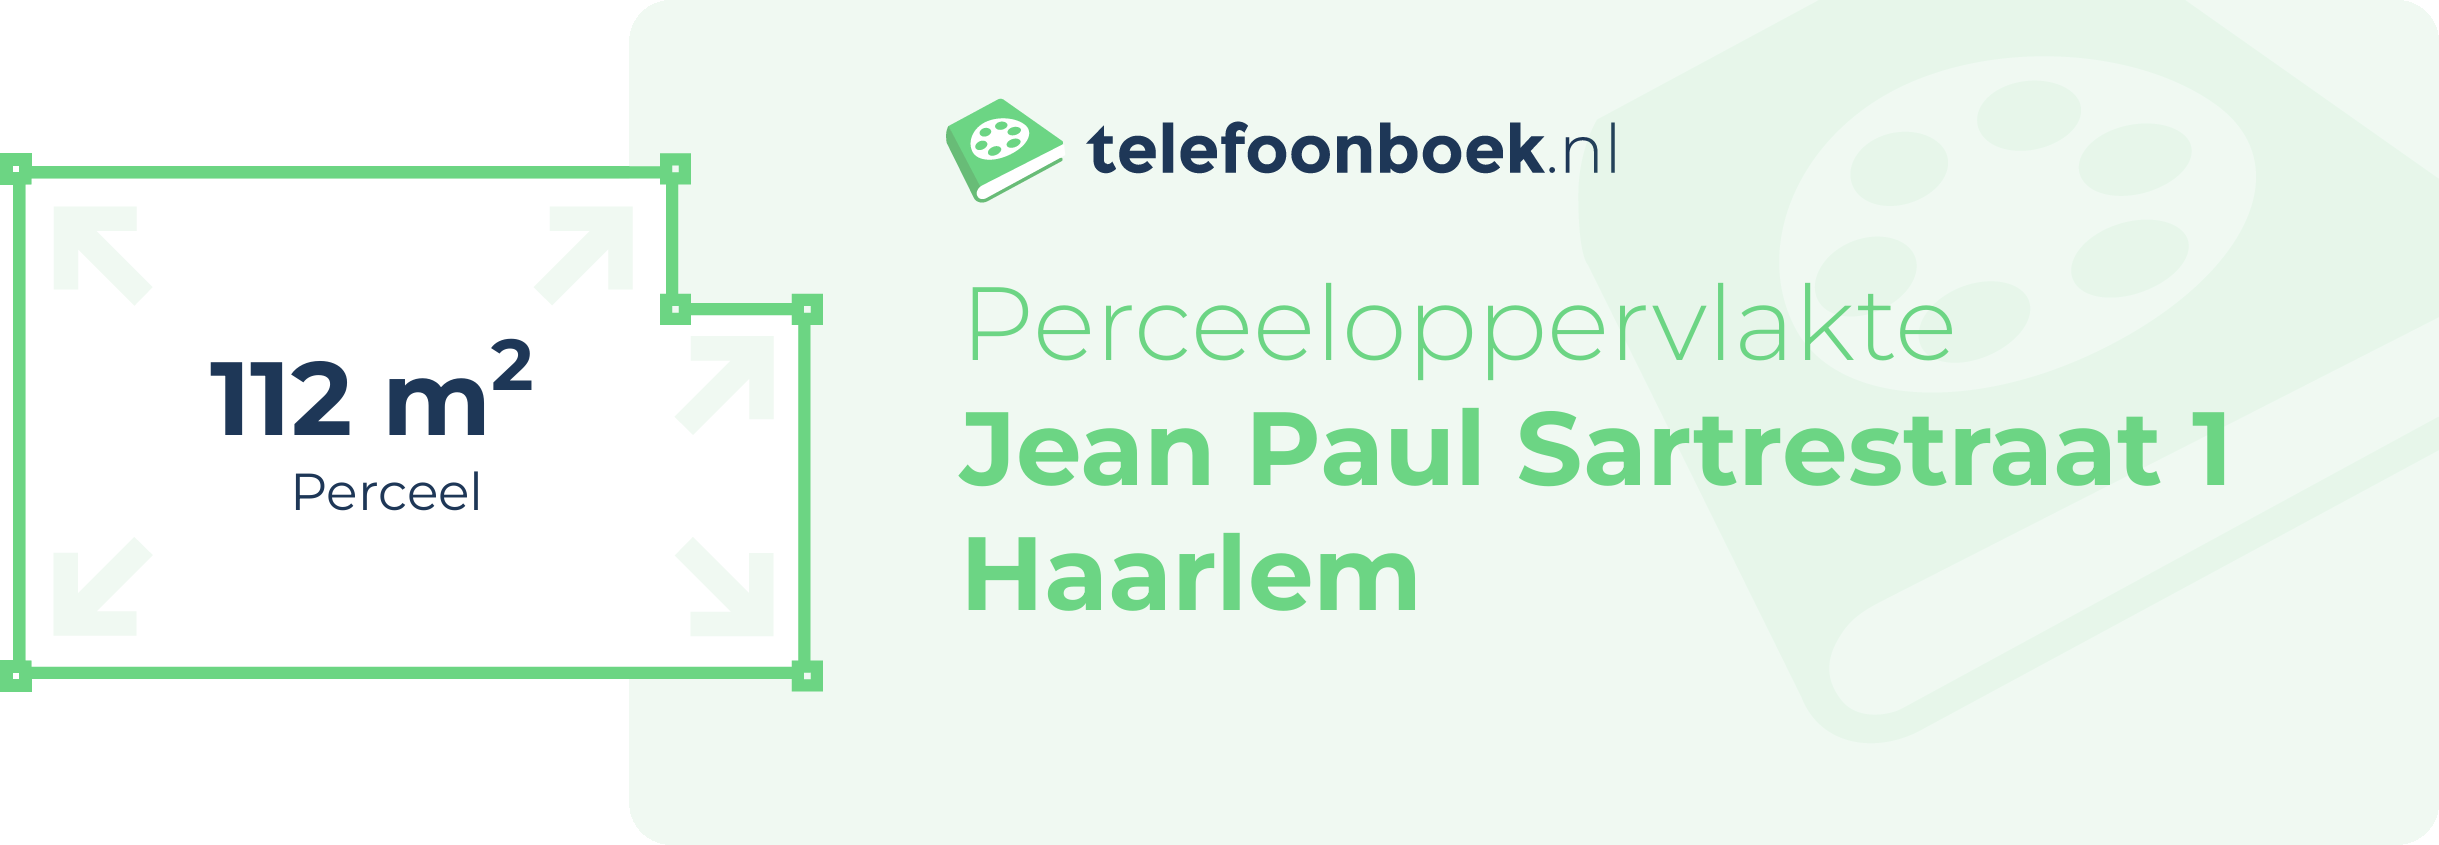 Perceeloppervlakte Jean Paul Sartrestraat 1 Haarlem